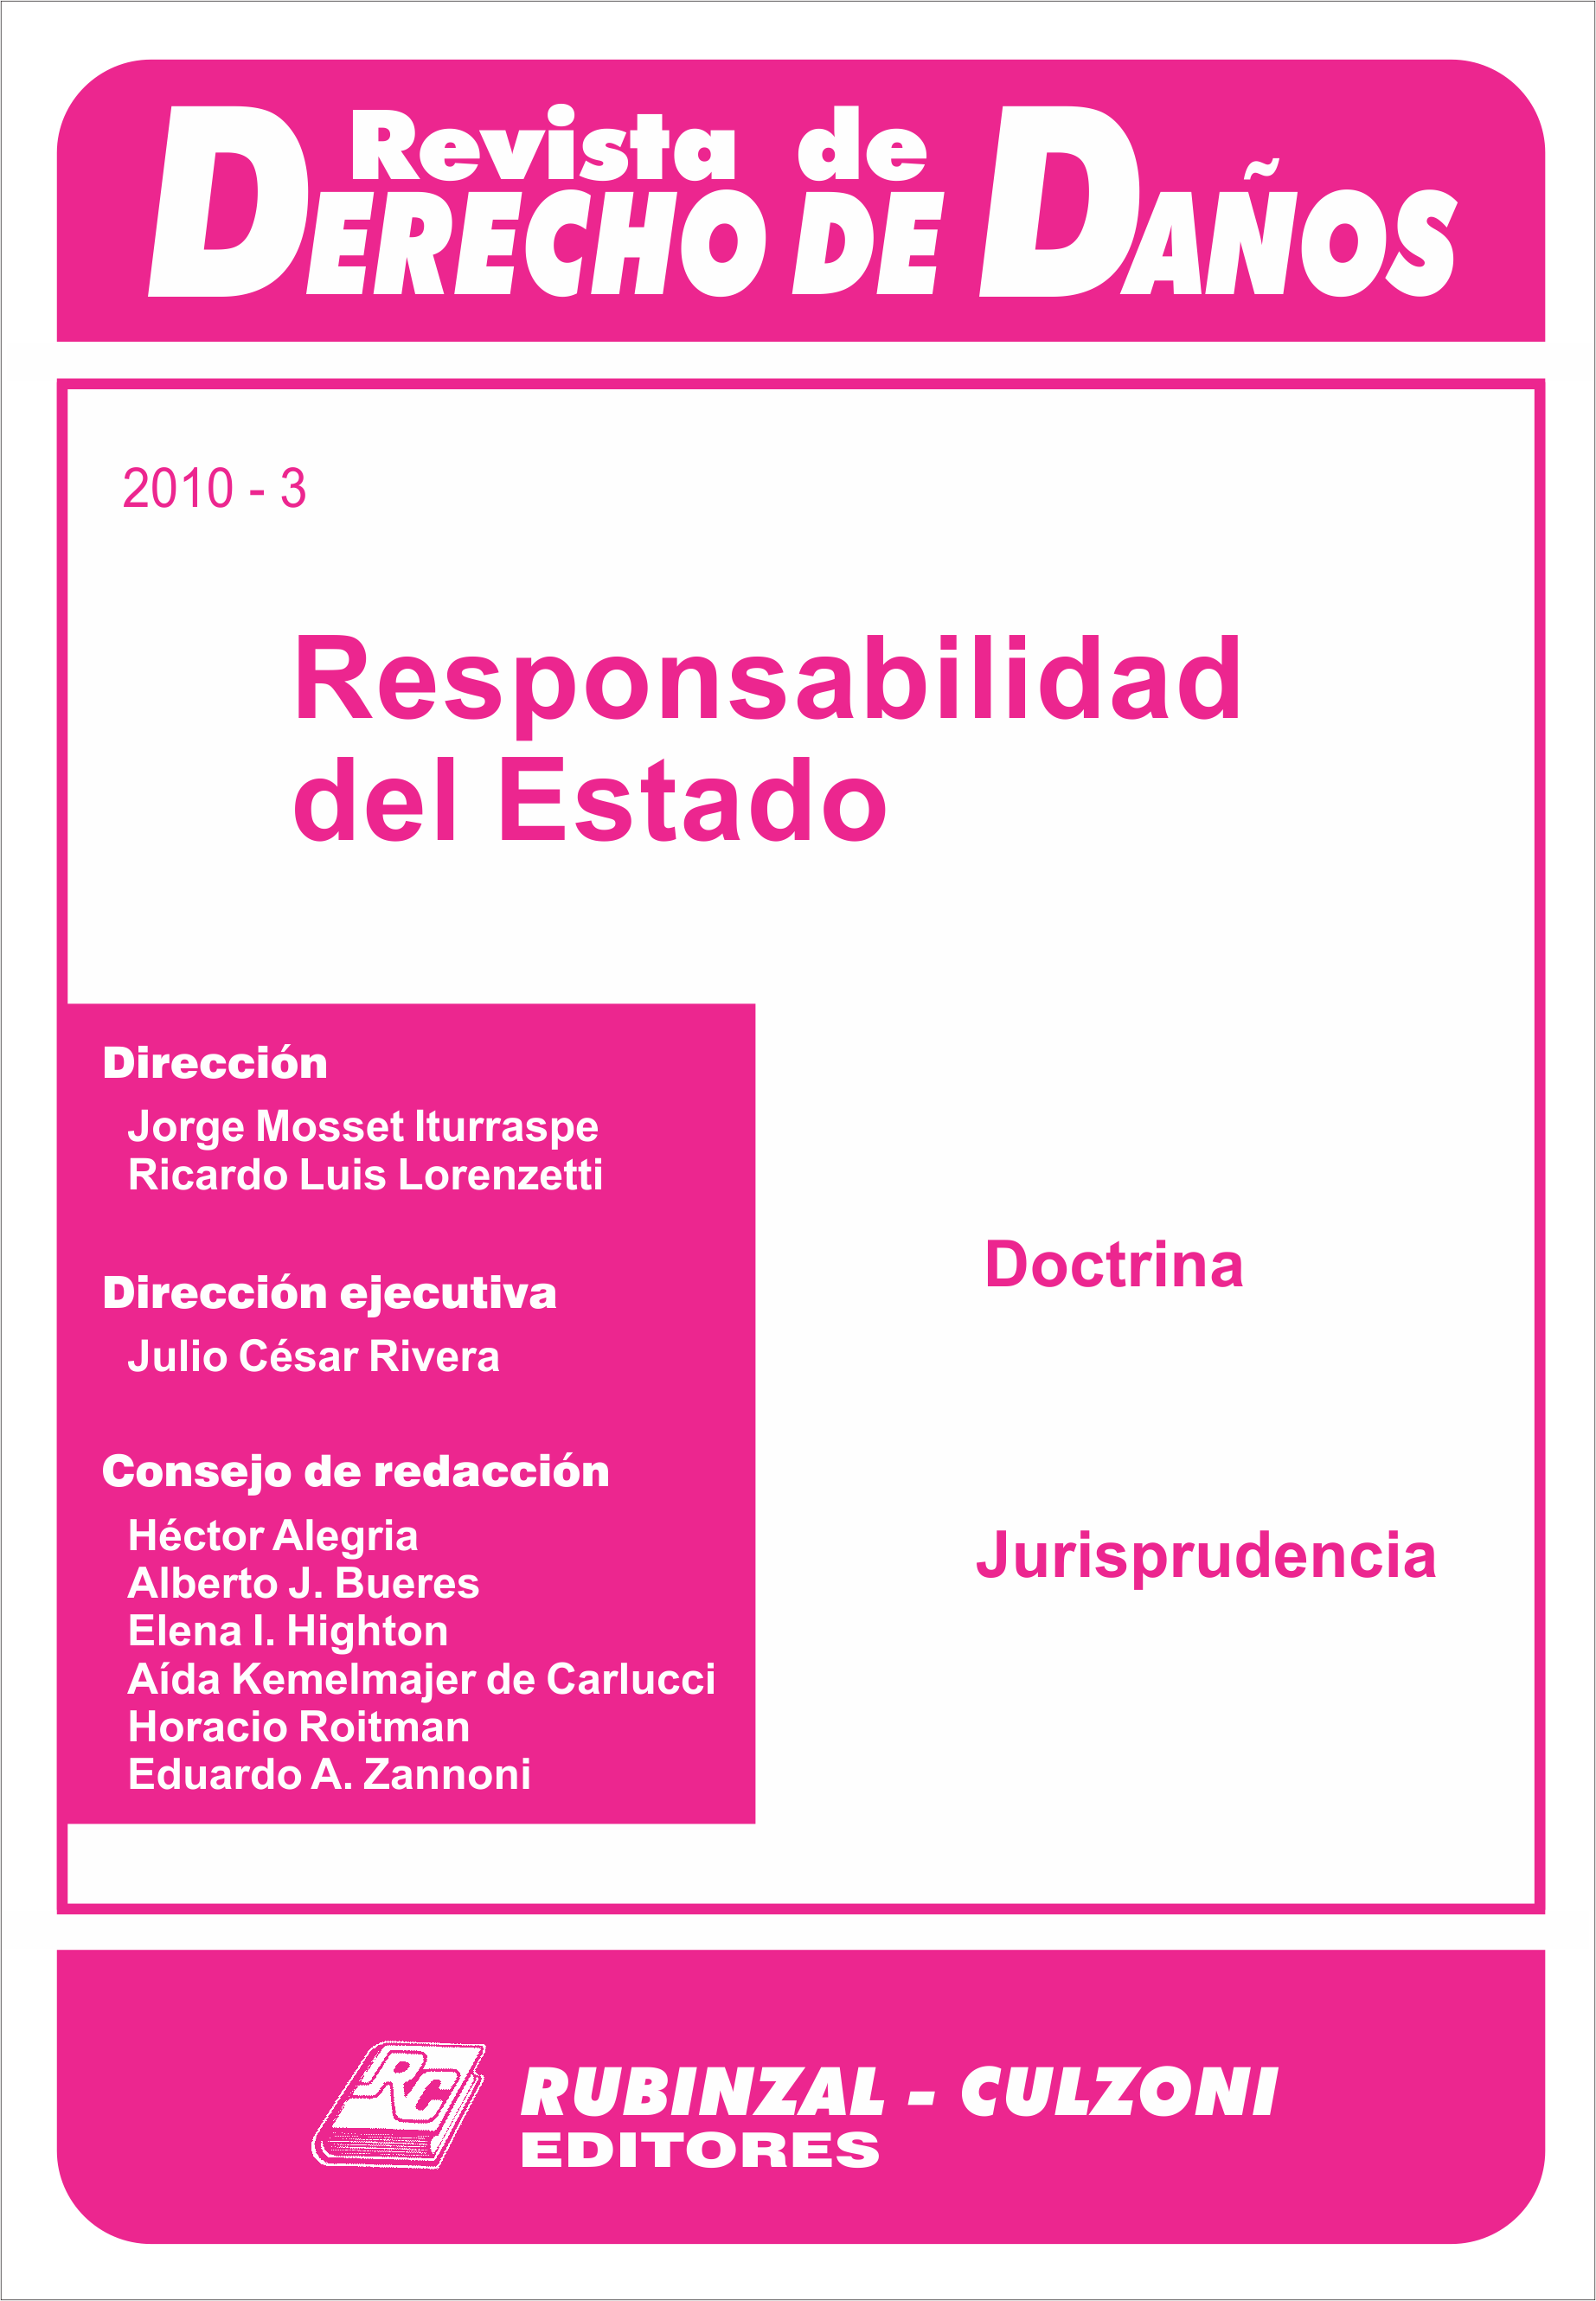 Revista de Derecho de Daños - Responsabilidad del Estado.